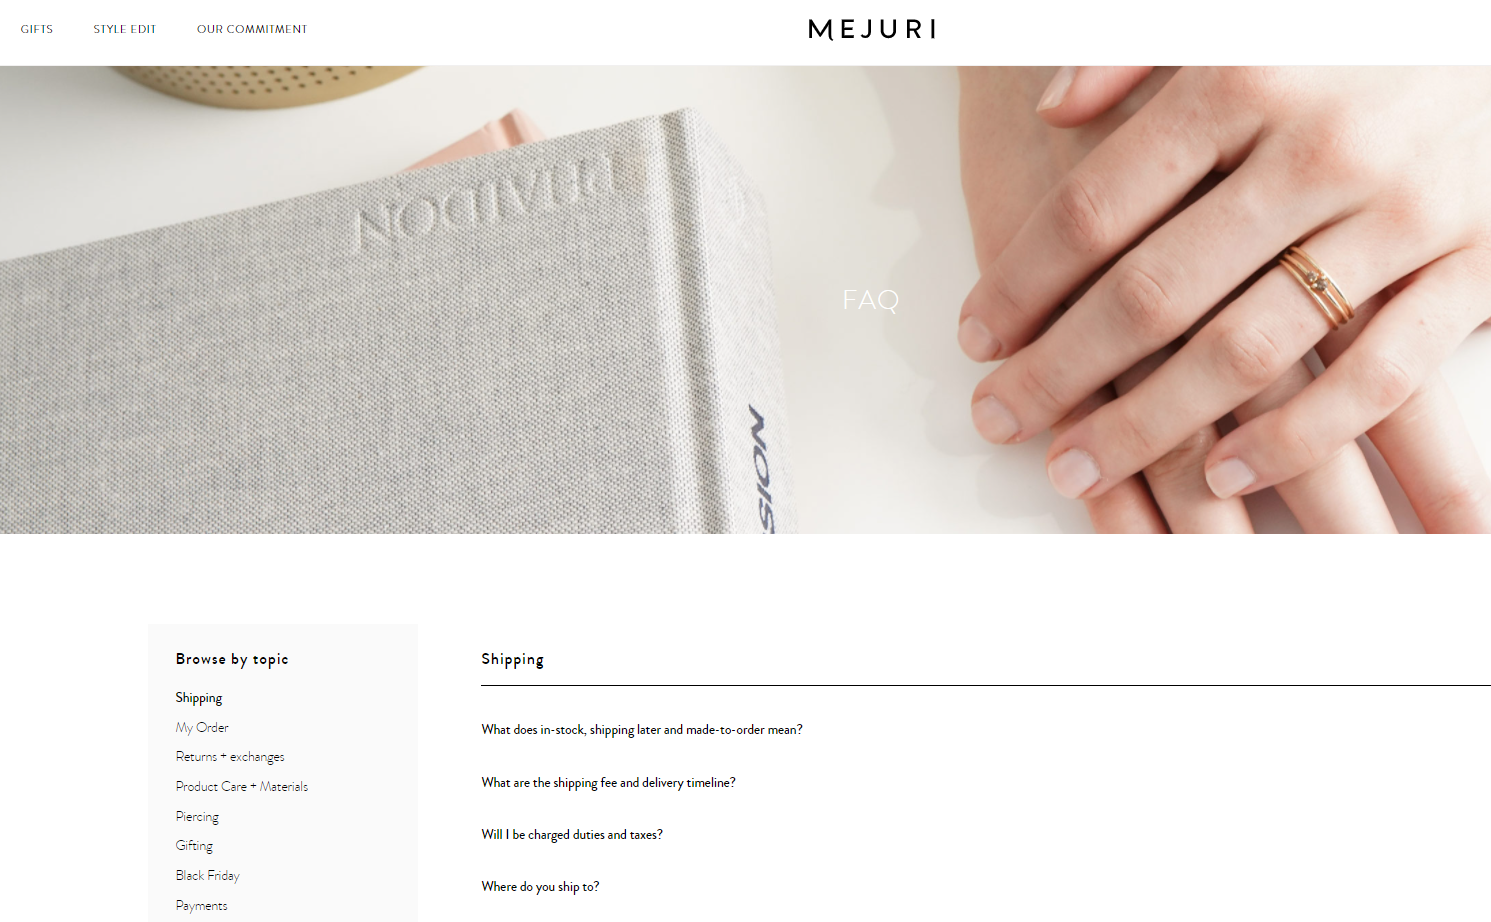 Firma Mejuri posiada minimalistyczną stronę FAQ